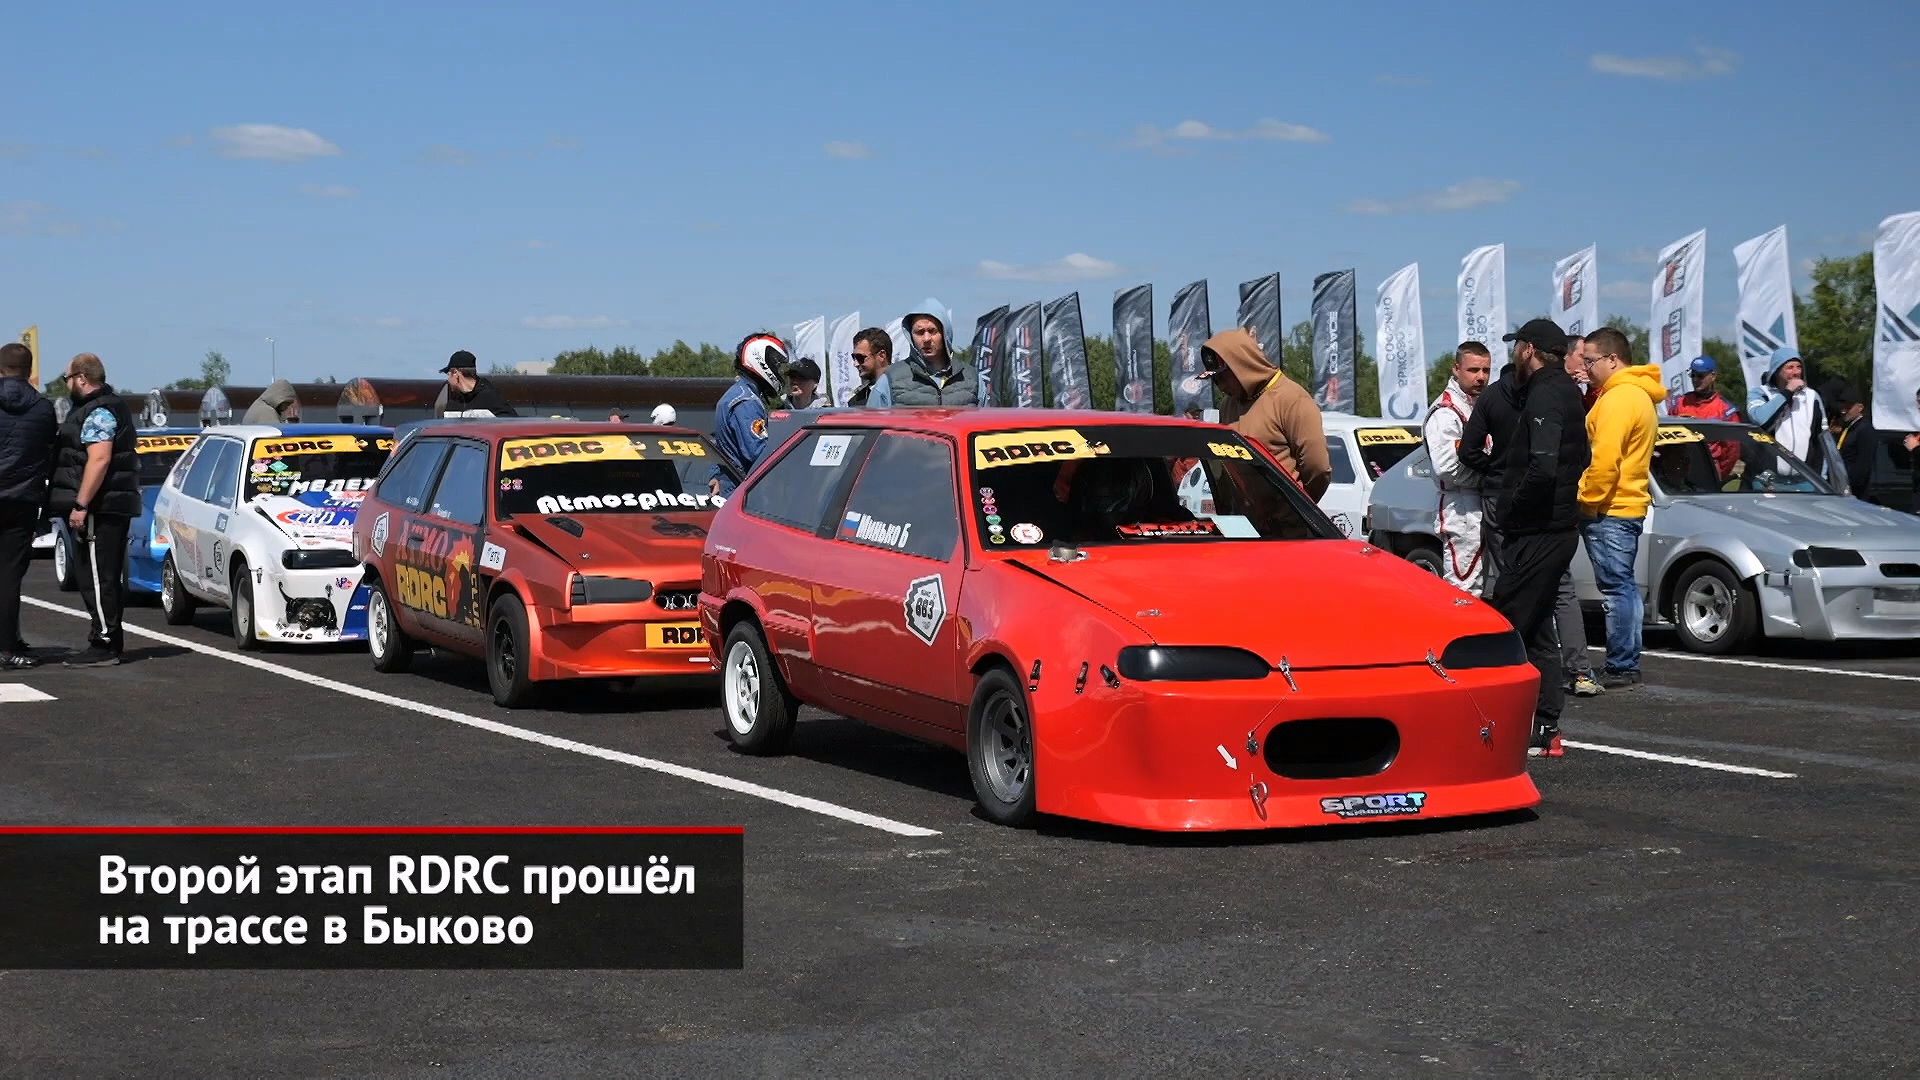 Второй этап RDRC прошёл на трассе в Быкове | Новости с колёс №2551